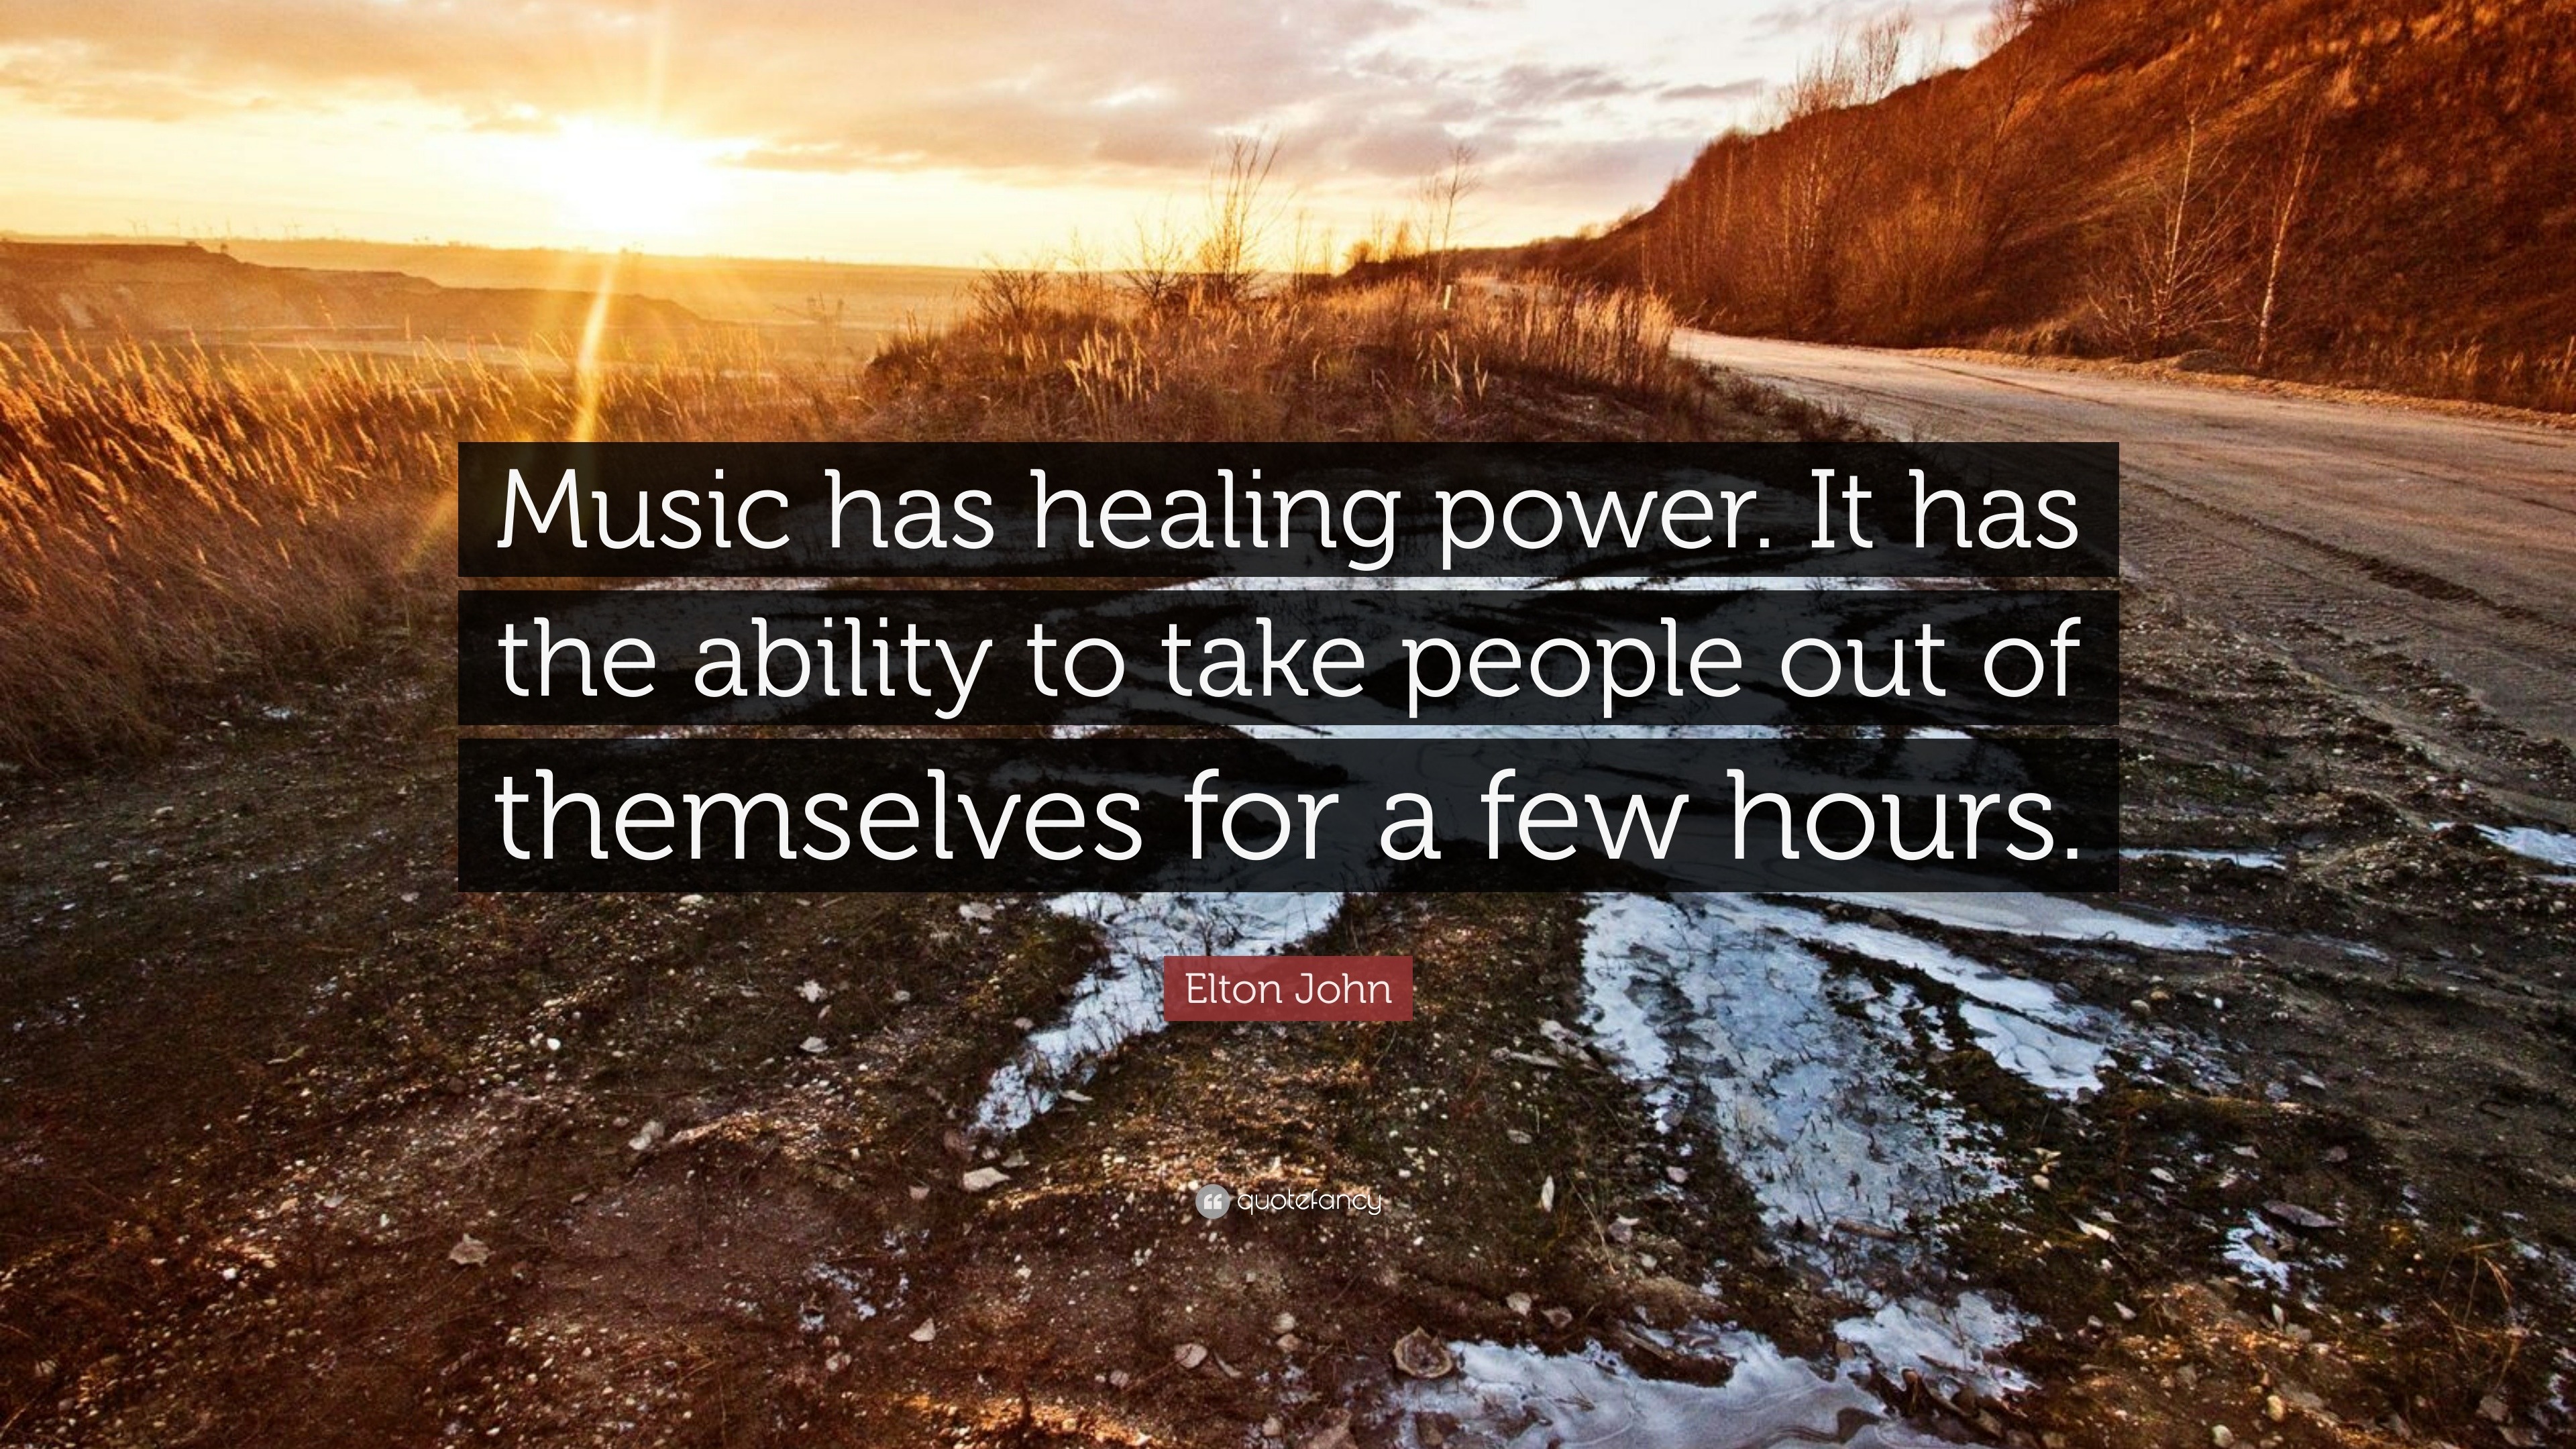 a speech about music has healing power